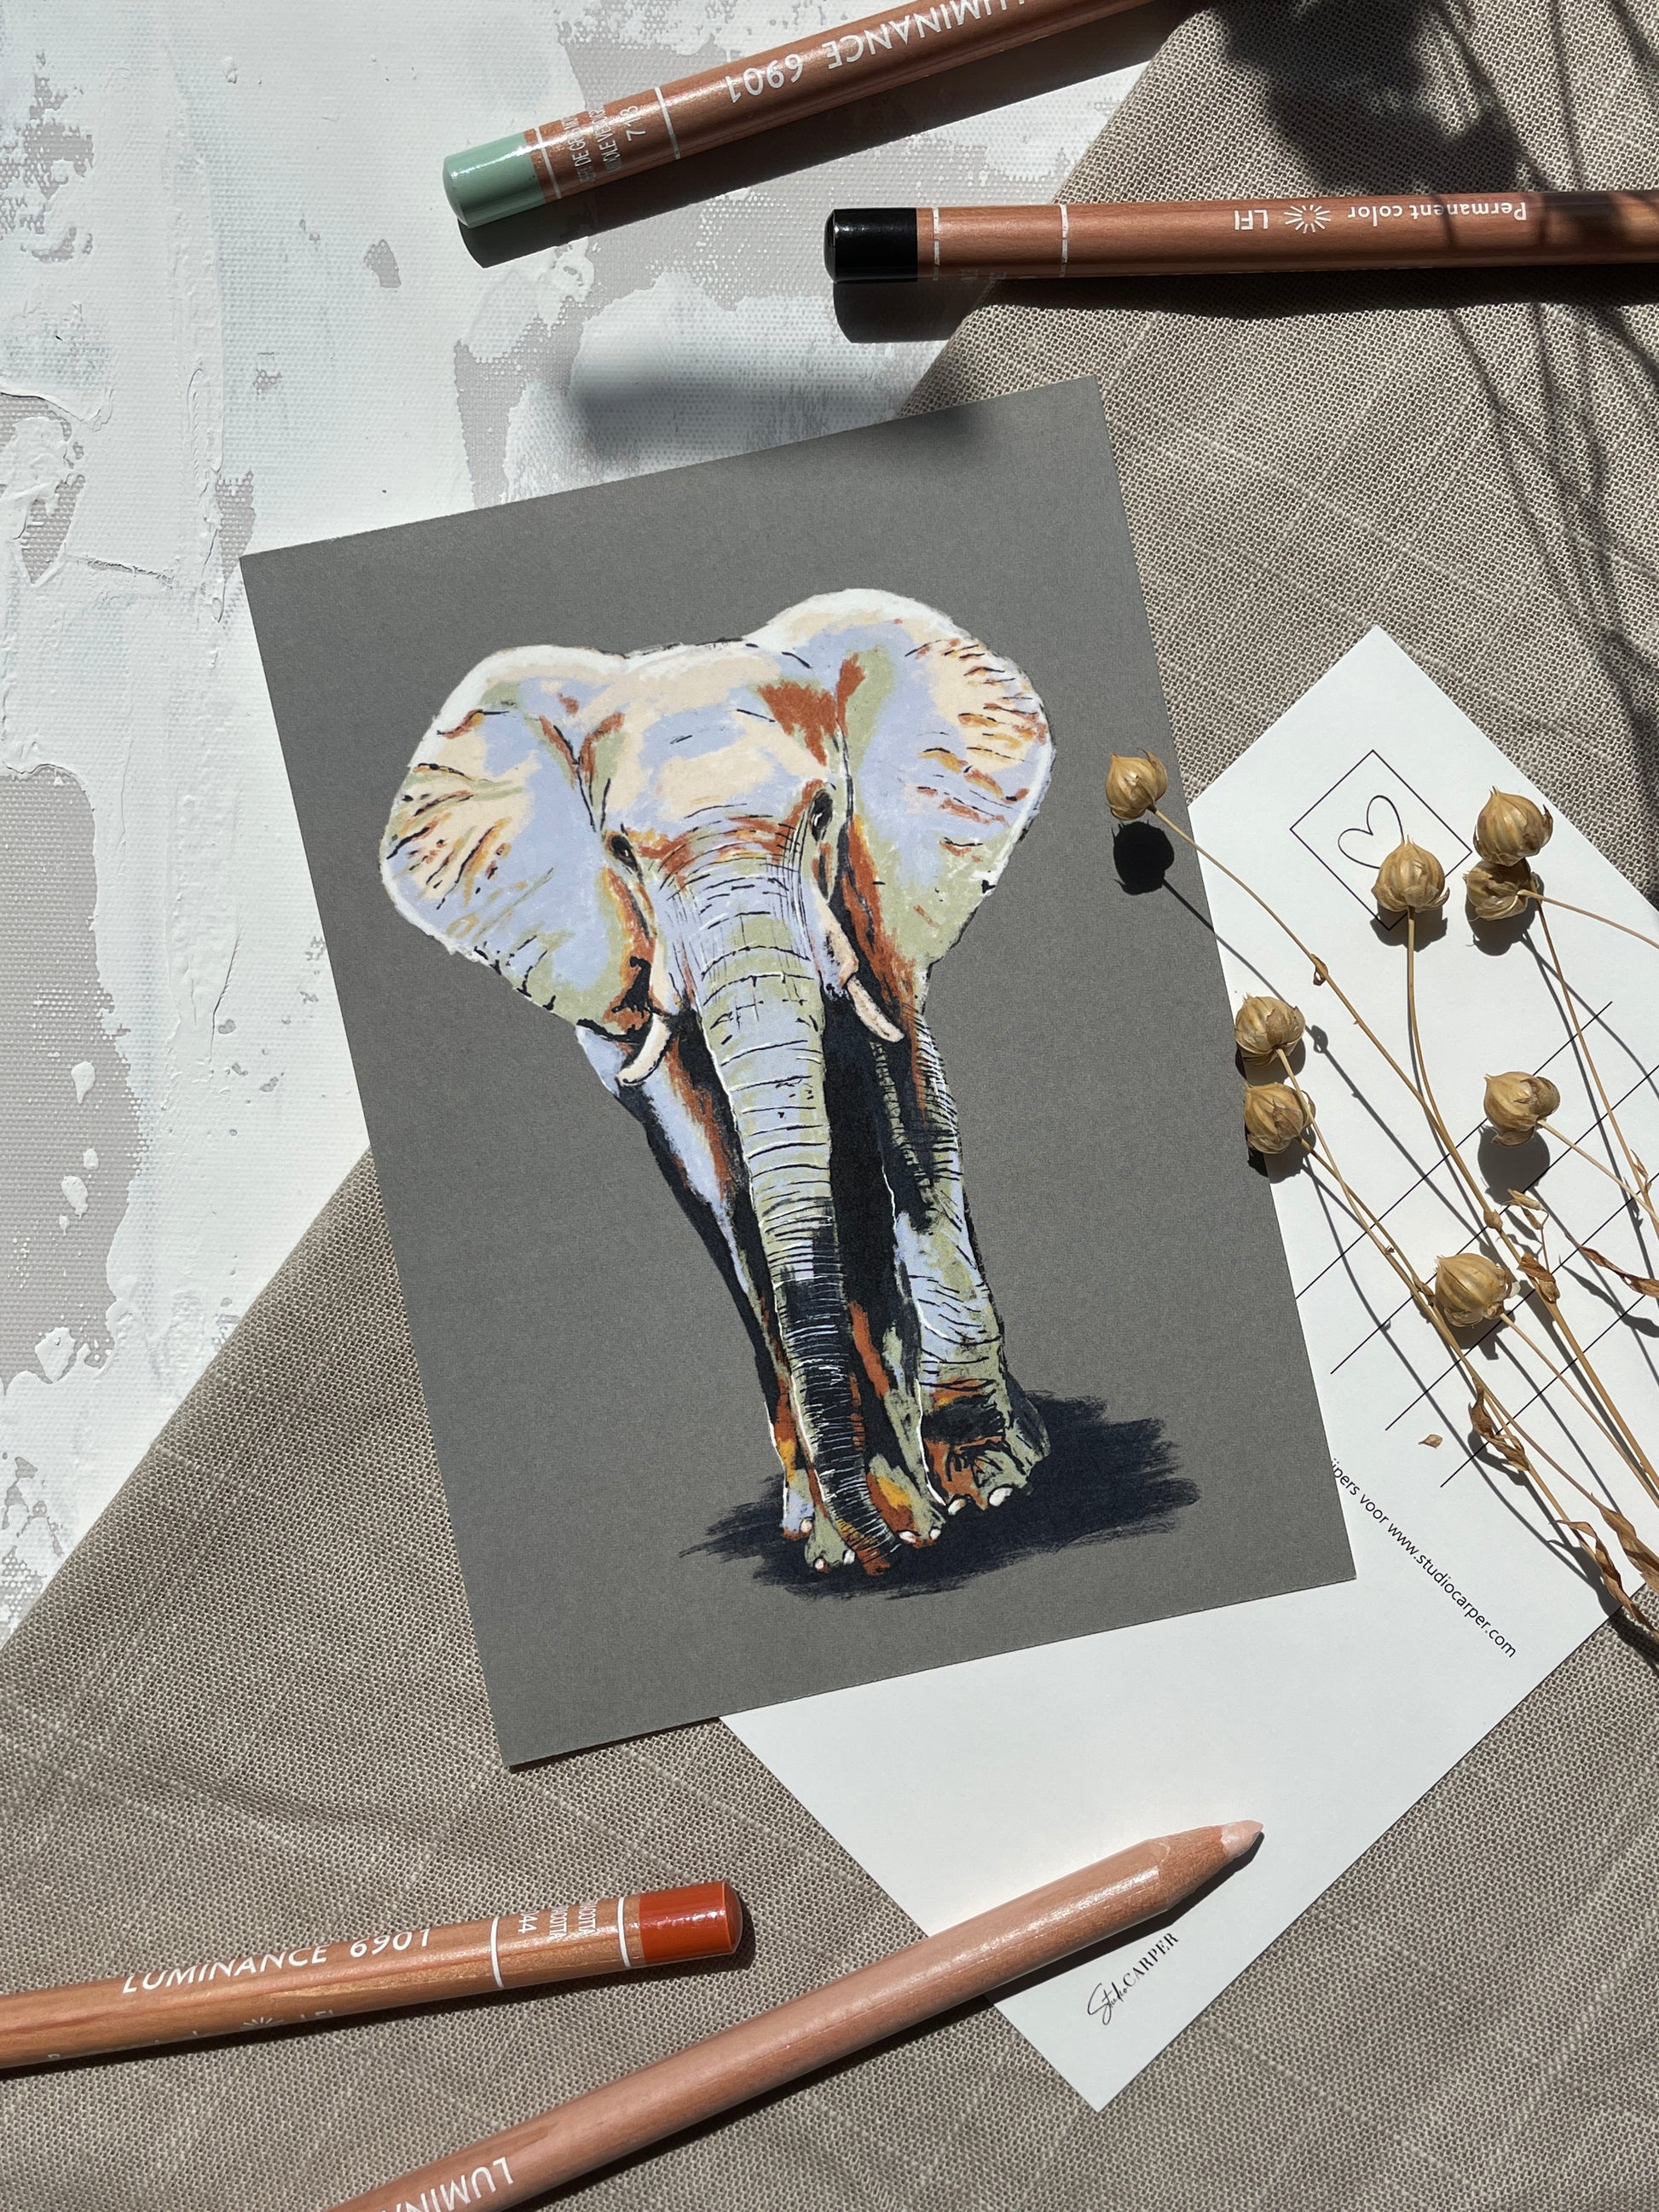 Ansichtkaart van een olifant uit de Wild Africa collectie. Kaart van Studio Carper. 